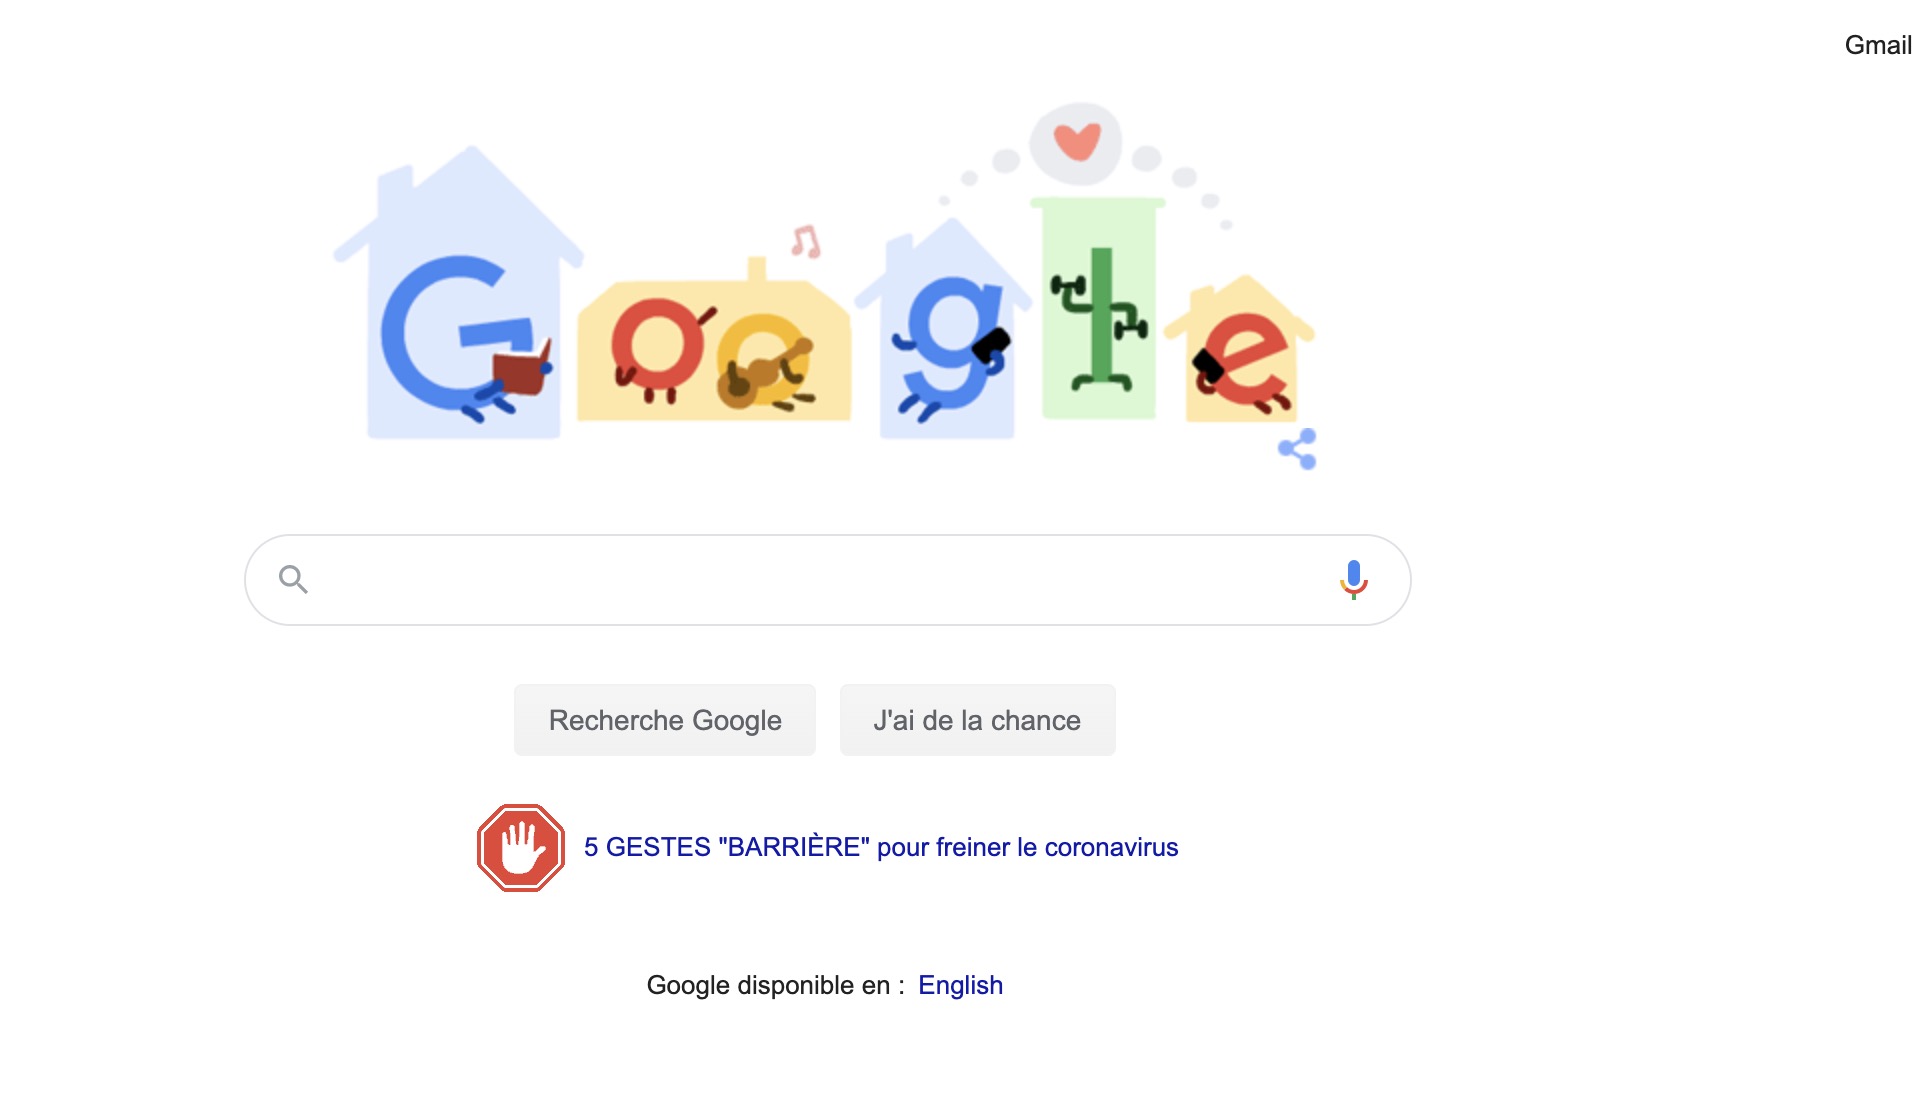 google doodle partage conseils pour contribuer arreter coronavirus restez chez vous 1